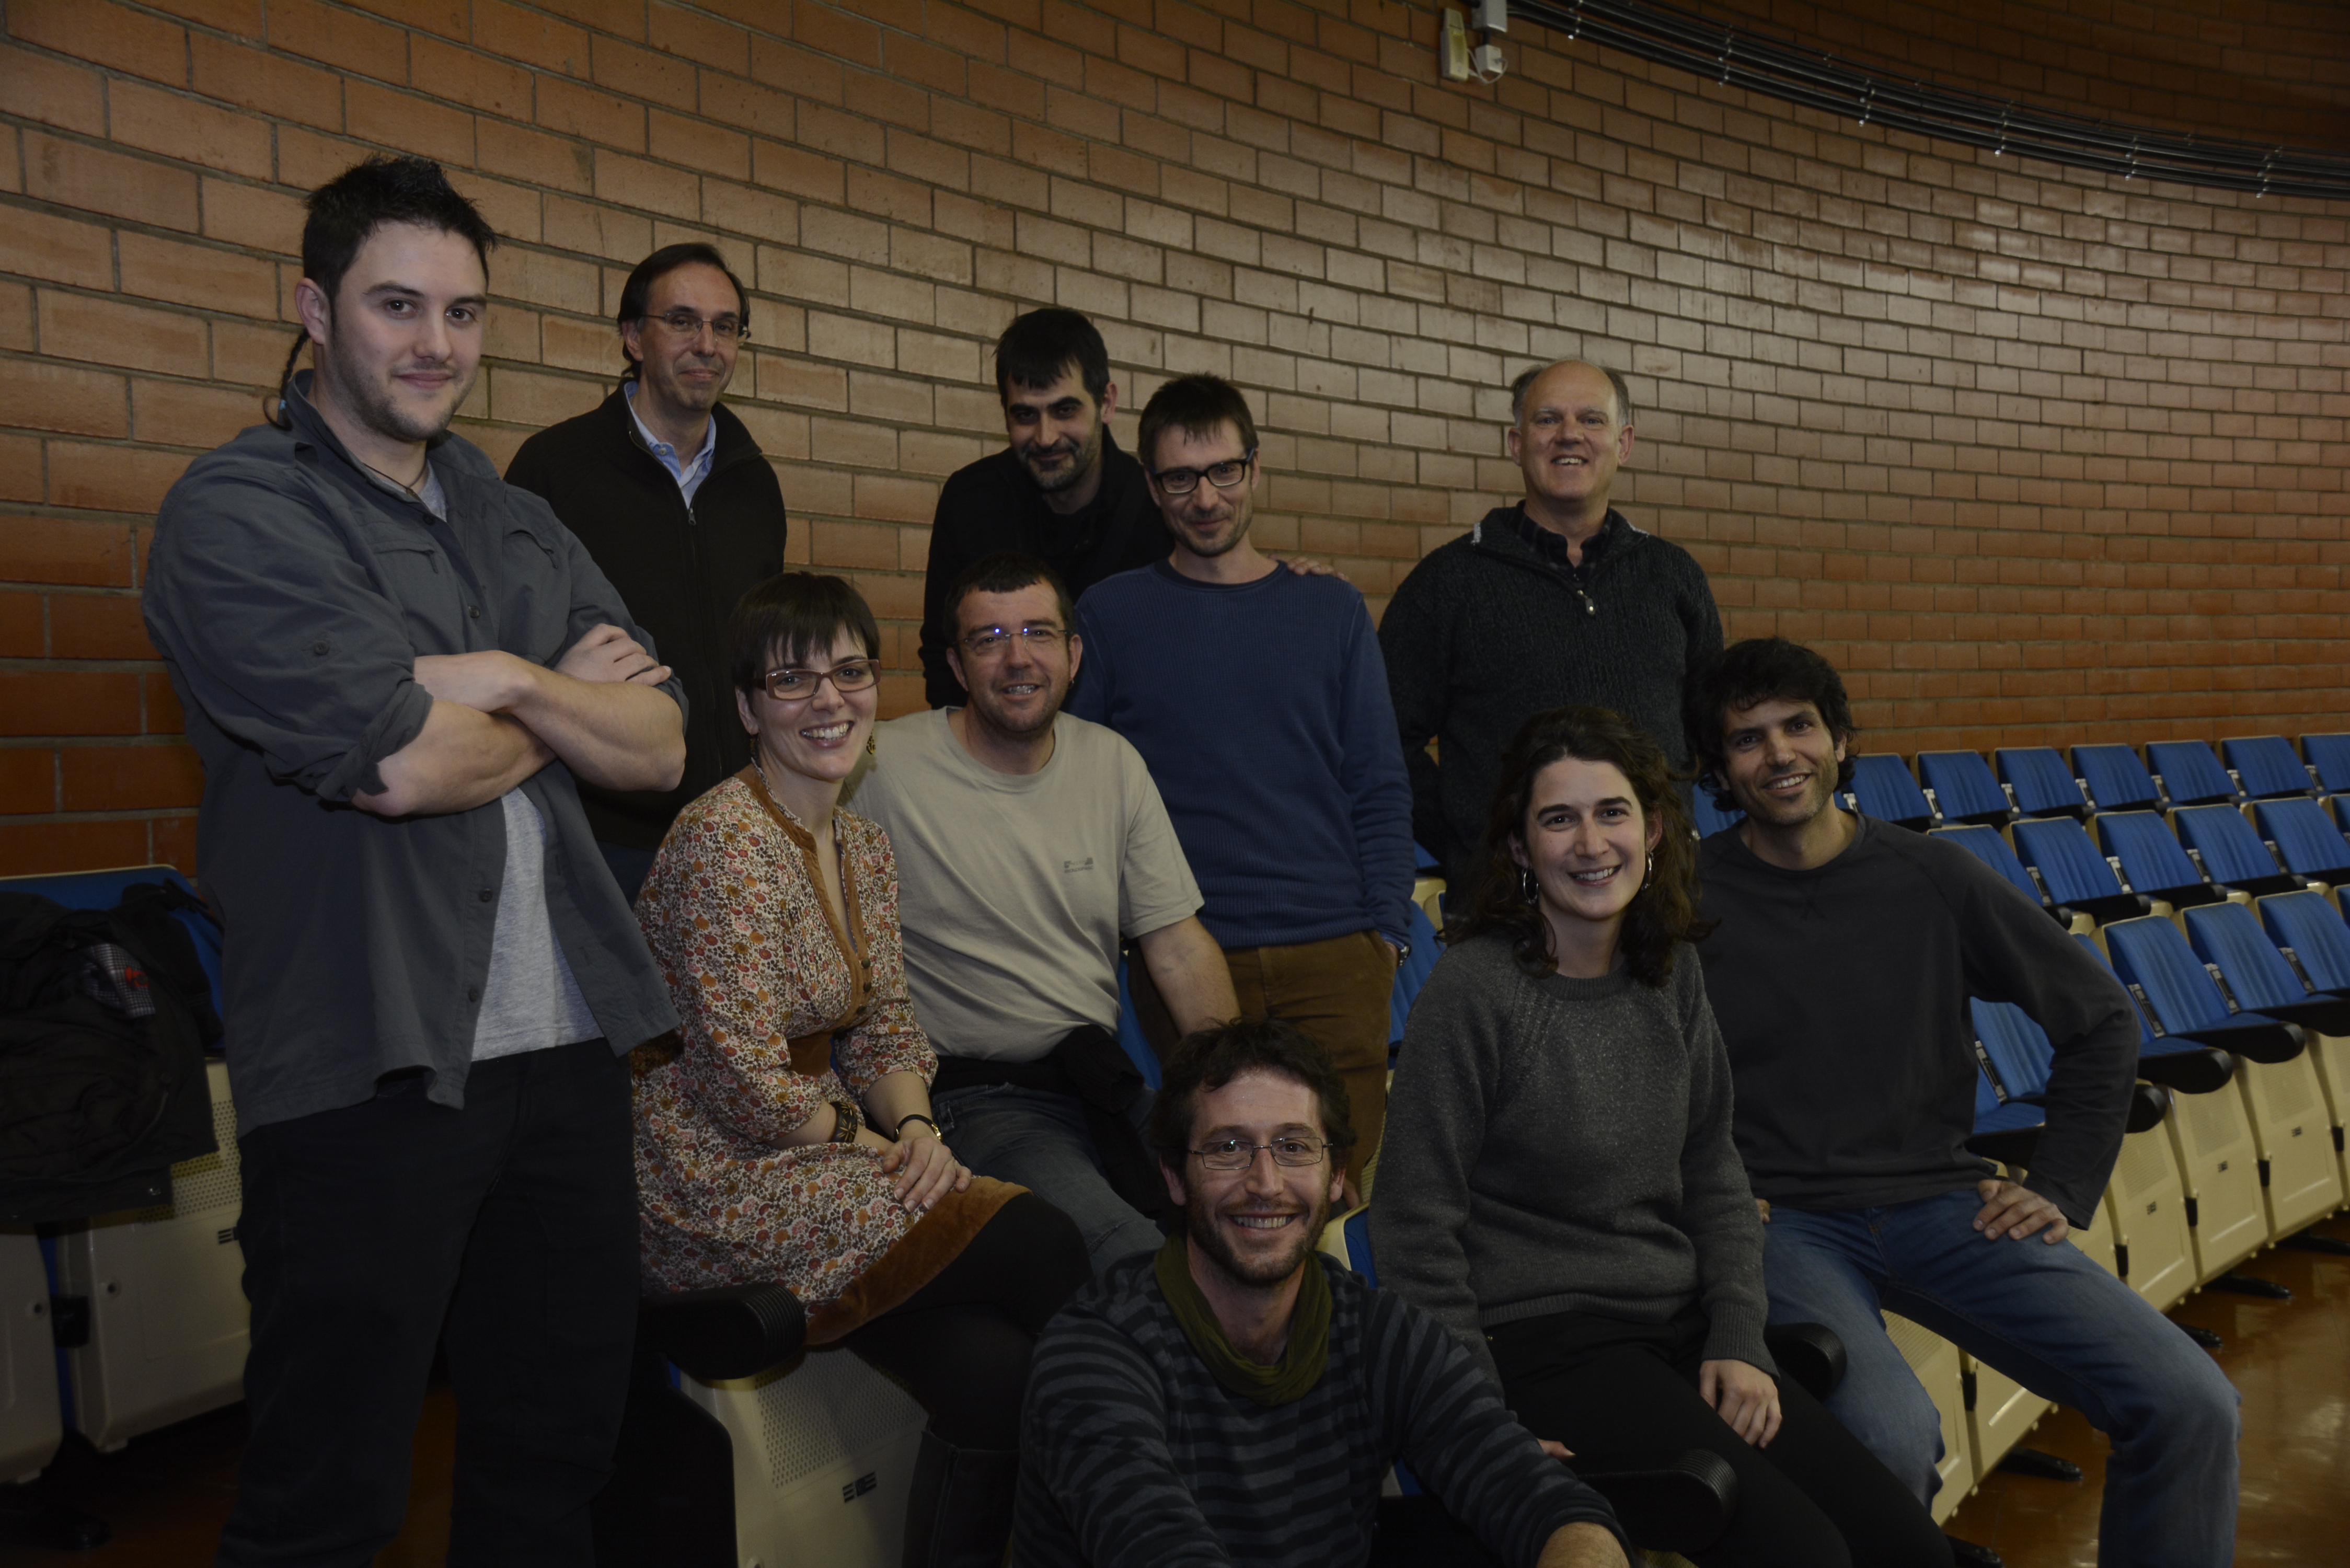 L’Equip de Biologia de la Conservació de la Universitat de Barcelona és un grup de referència des del 1980 en la recerca de l’ecologia de l’àliga perdiguera o cuabarrada.